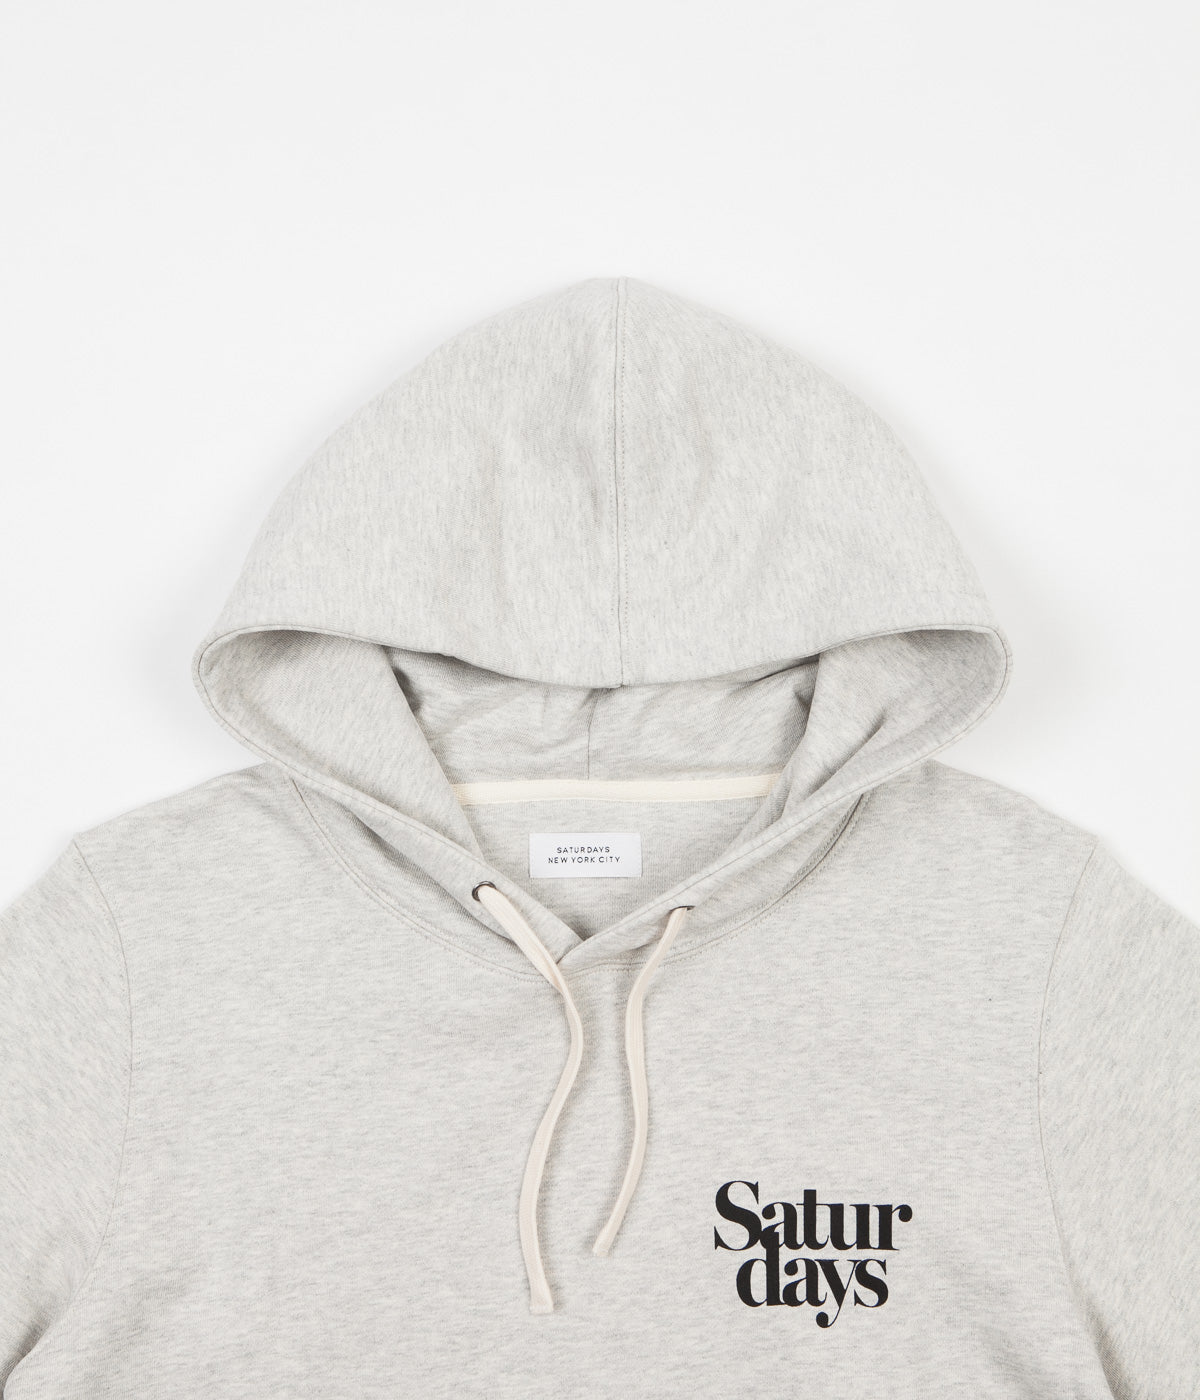 saturday new york city hoodie